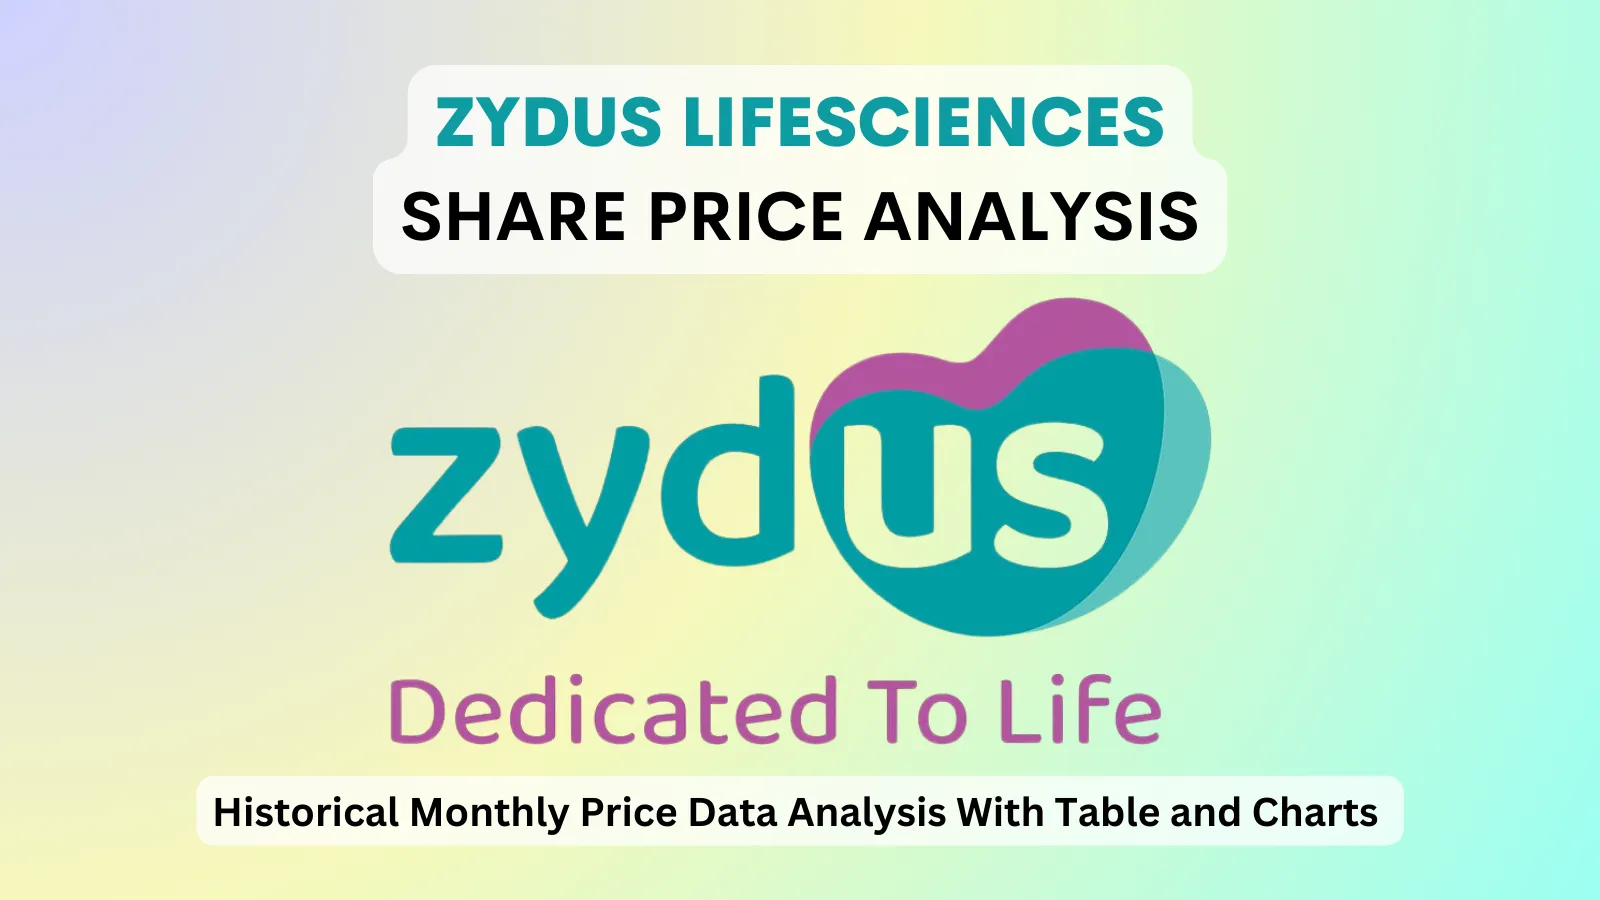 zydus lifesciences share price analysis